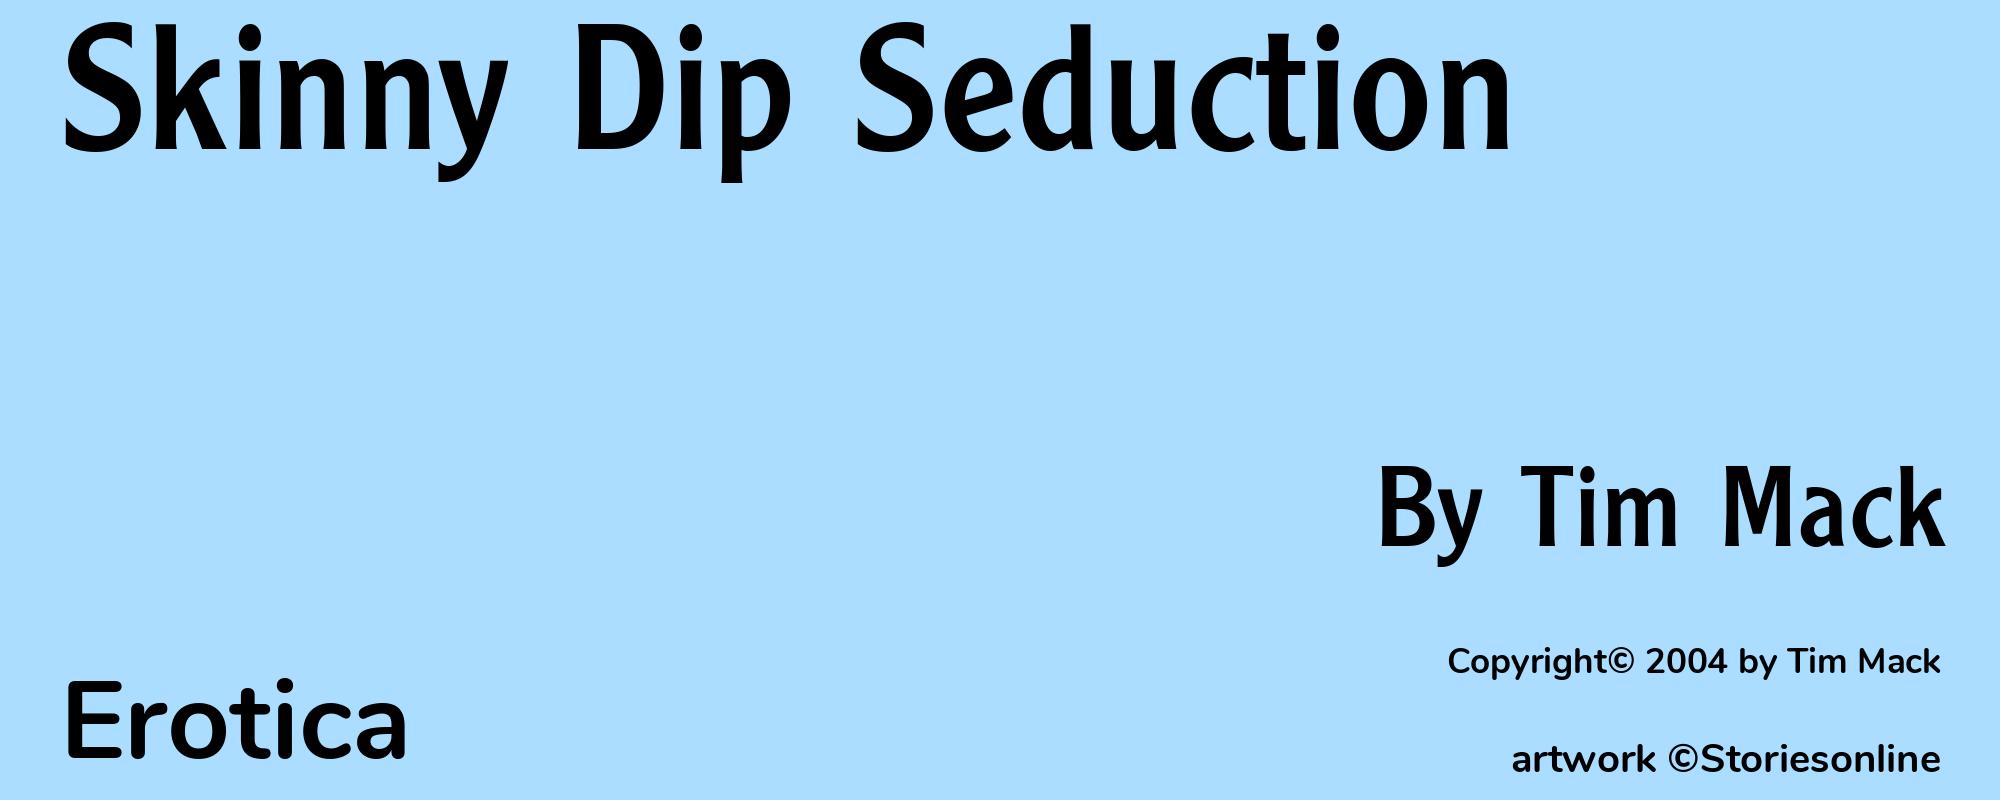 Skinny Dip Seduction - Cover